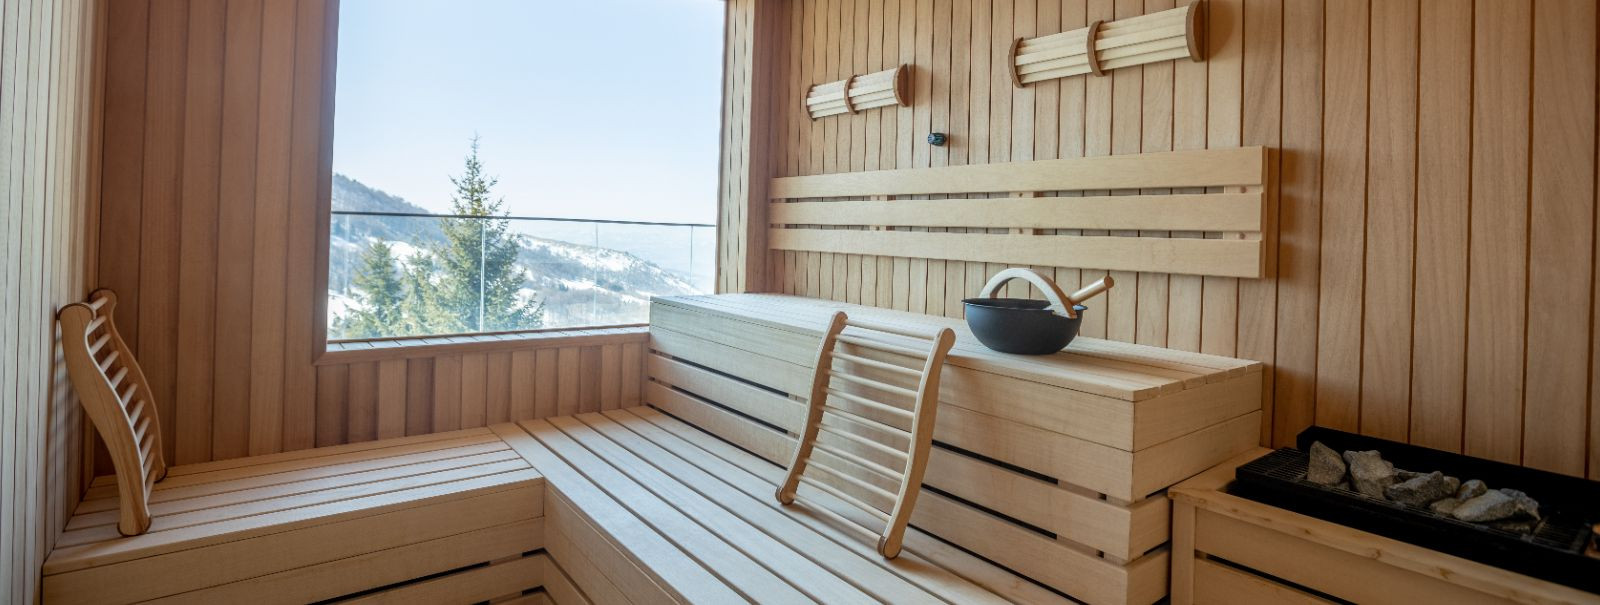 Õige puidu valimine oma sauna jaoks on oluline nii sauna sooritusvõime ...